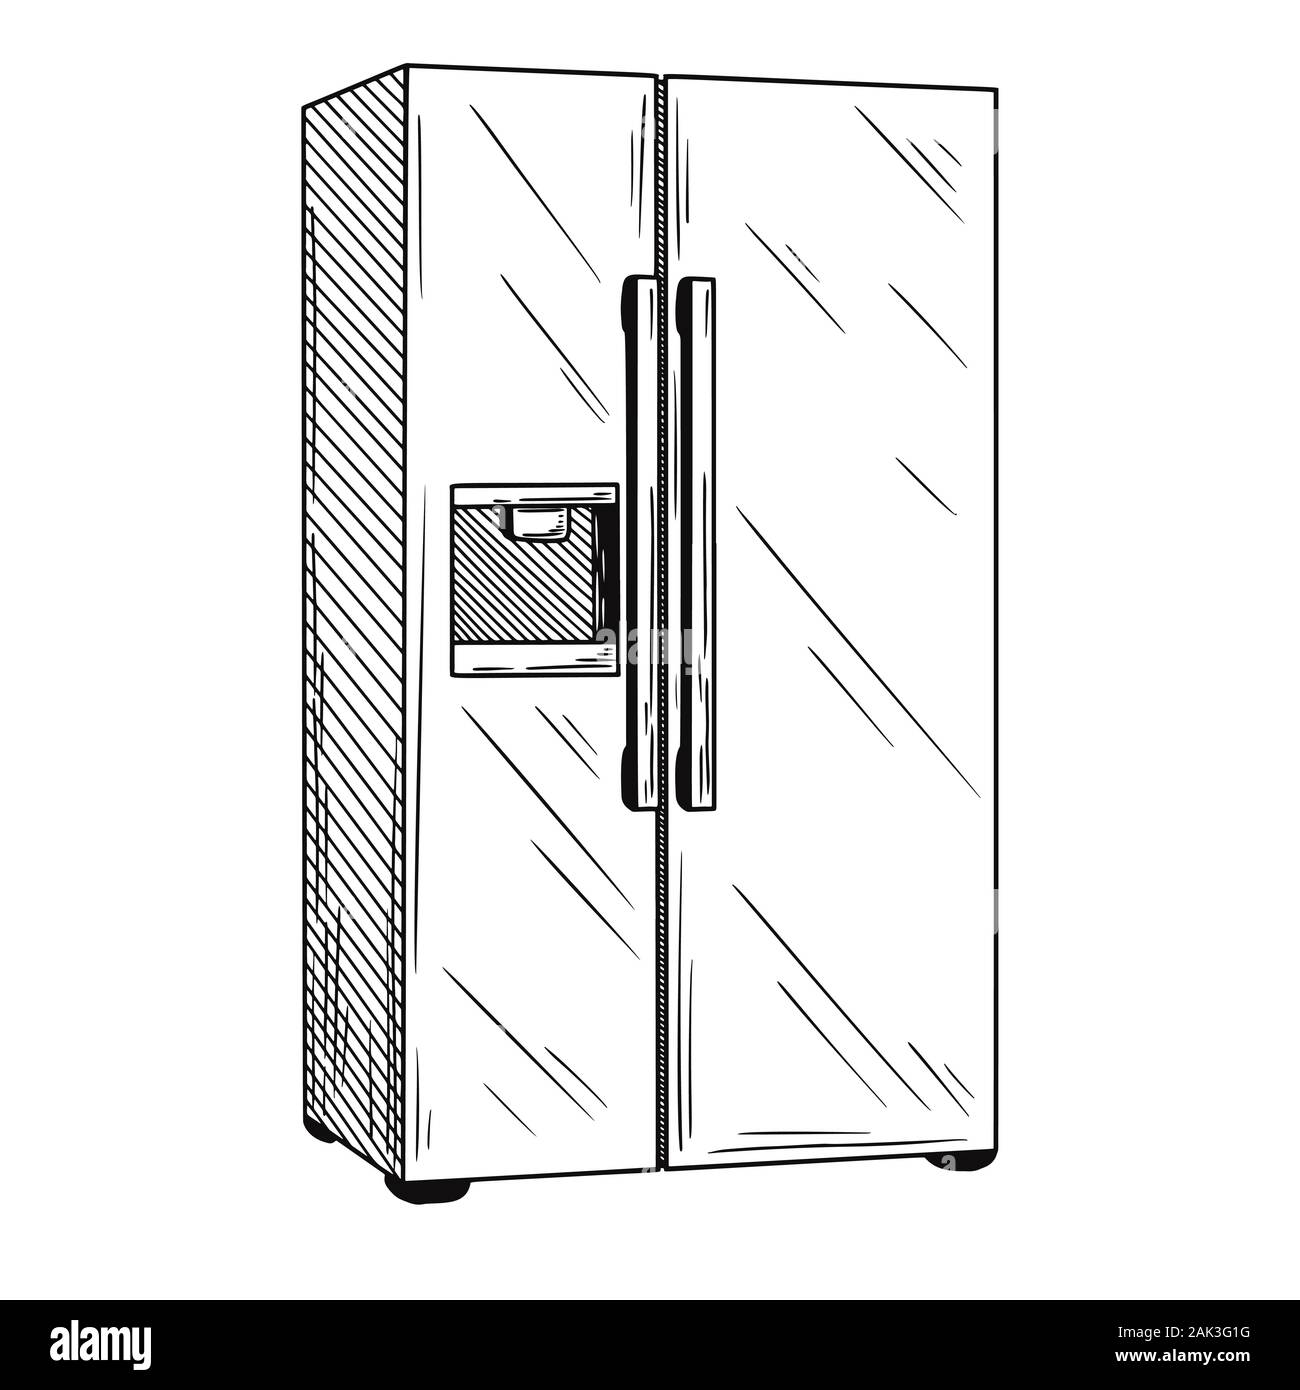 Kühlschränke auf weißem Hintergrund. Vector Illustration einer Skizze Stil. Stock Vektor